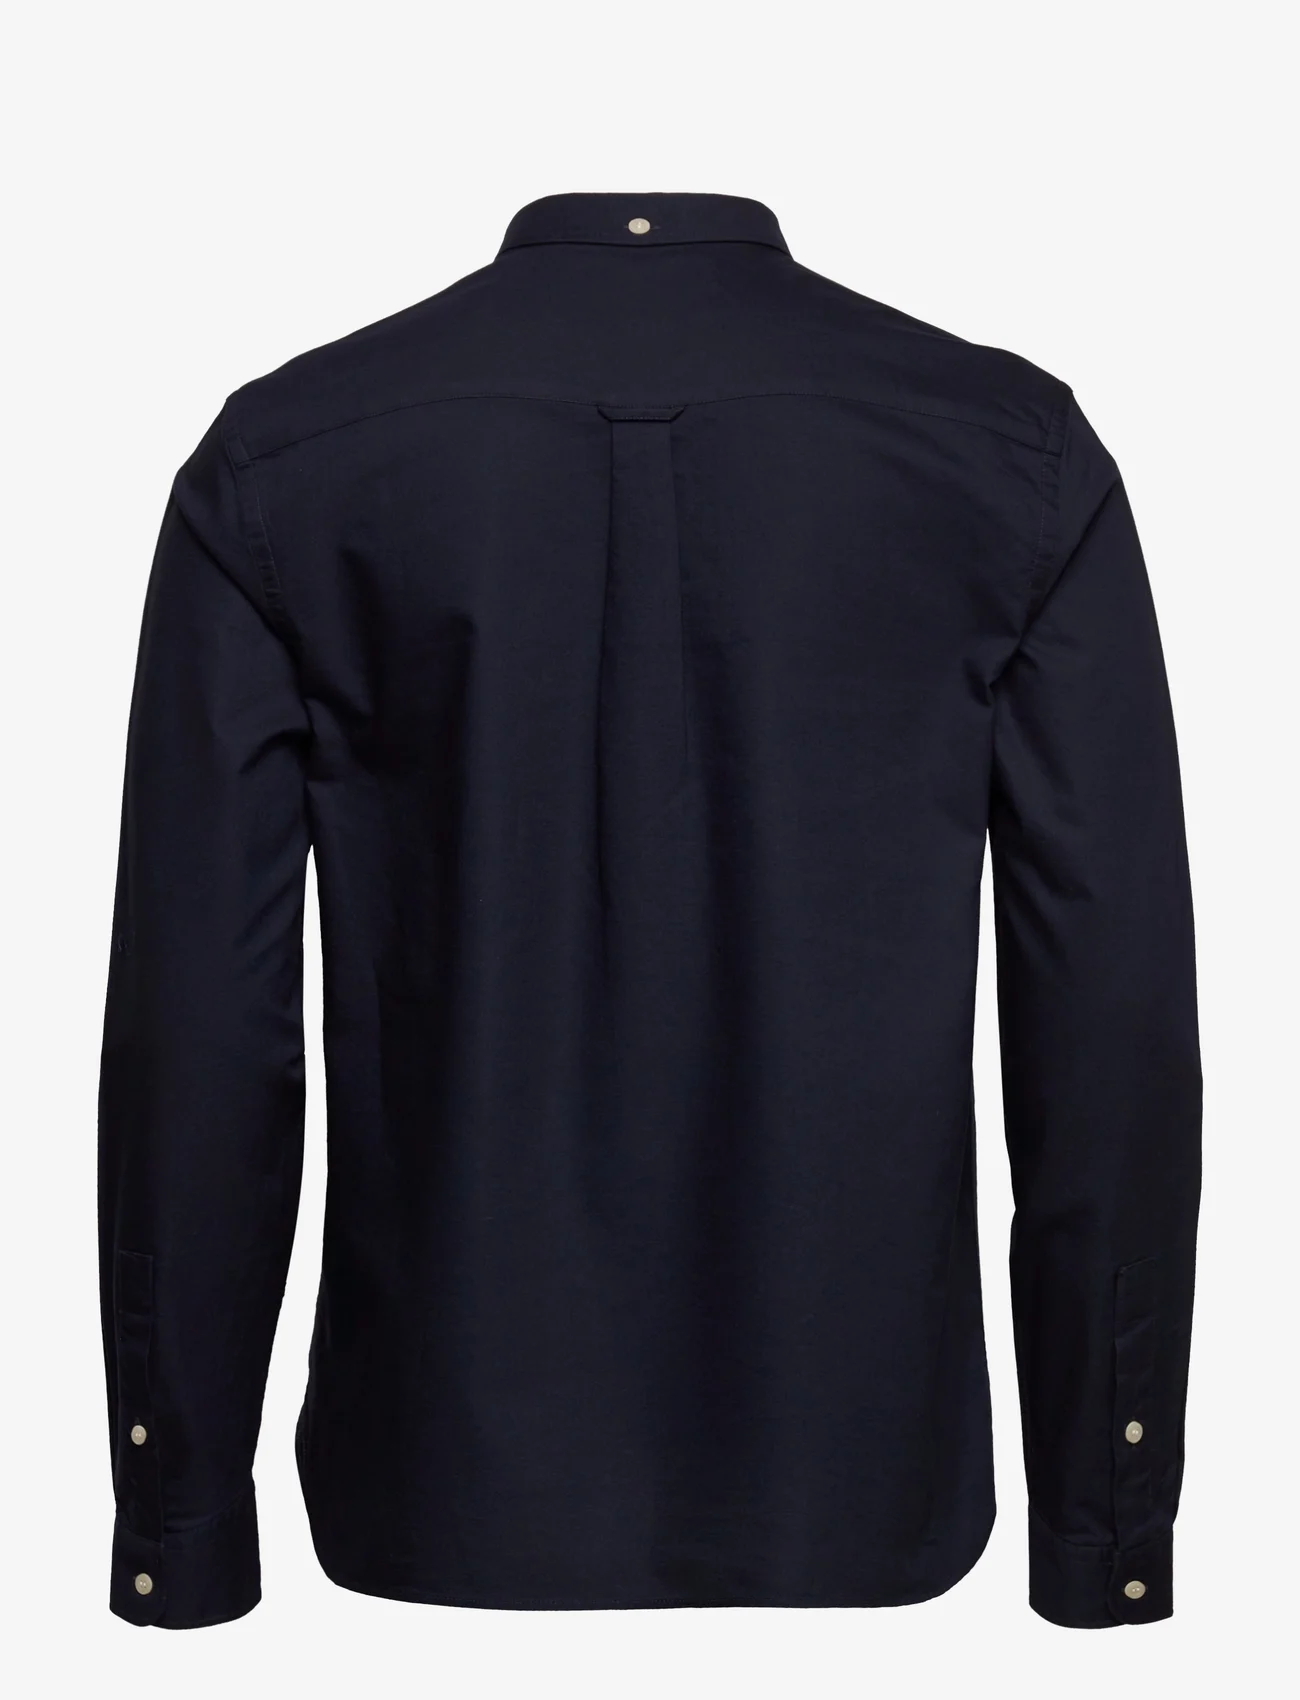 Lyle & Scott - Regular Fit Light Weight Oxford Shirt - oxford-hemden - dark navy - 1